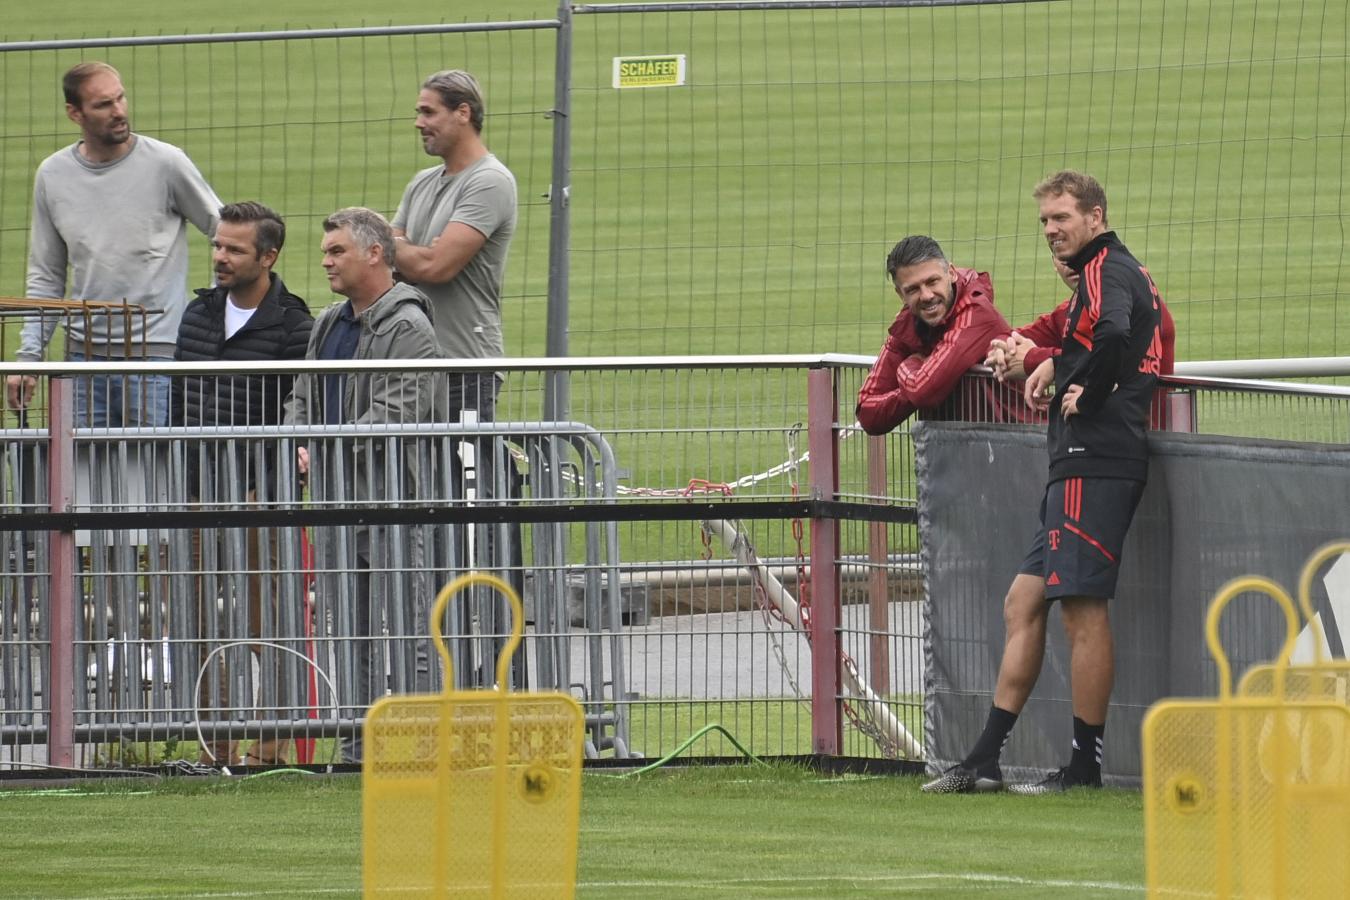 Imagen Nagelsmann y Demichelis en el entrenamiento del Bayern. Foto Frank Hoermann / SVEN SIMON / SVEN SIMON / dpa Picture-Alliance via AFP.